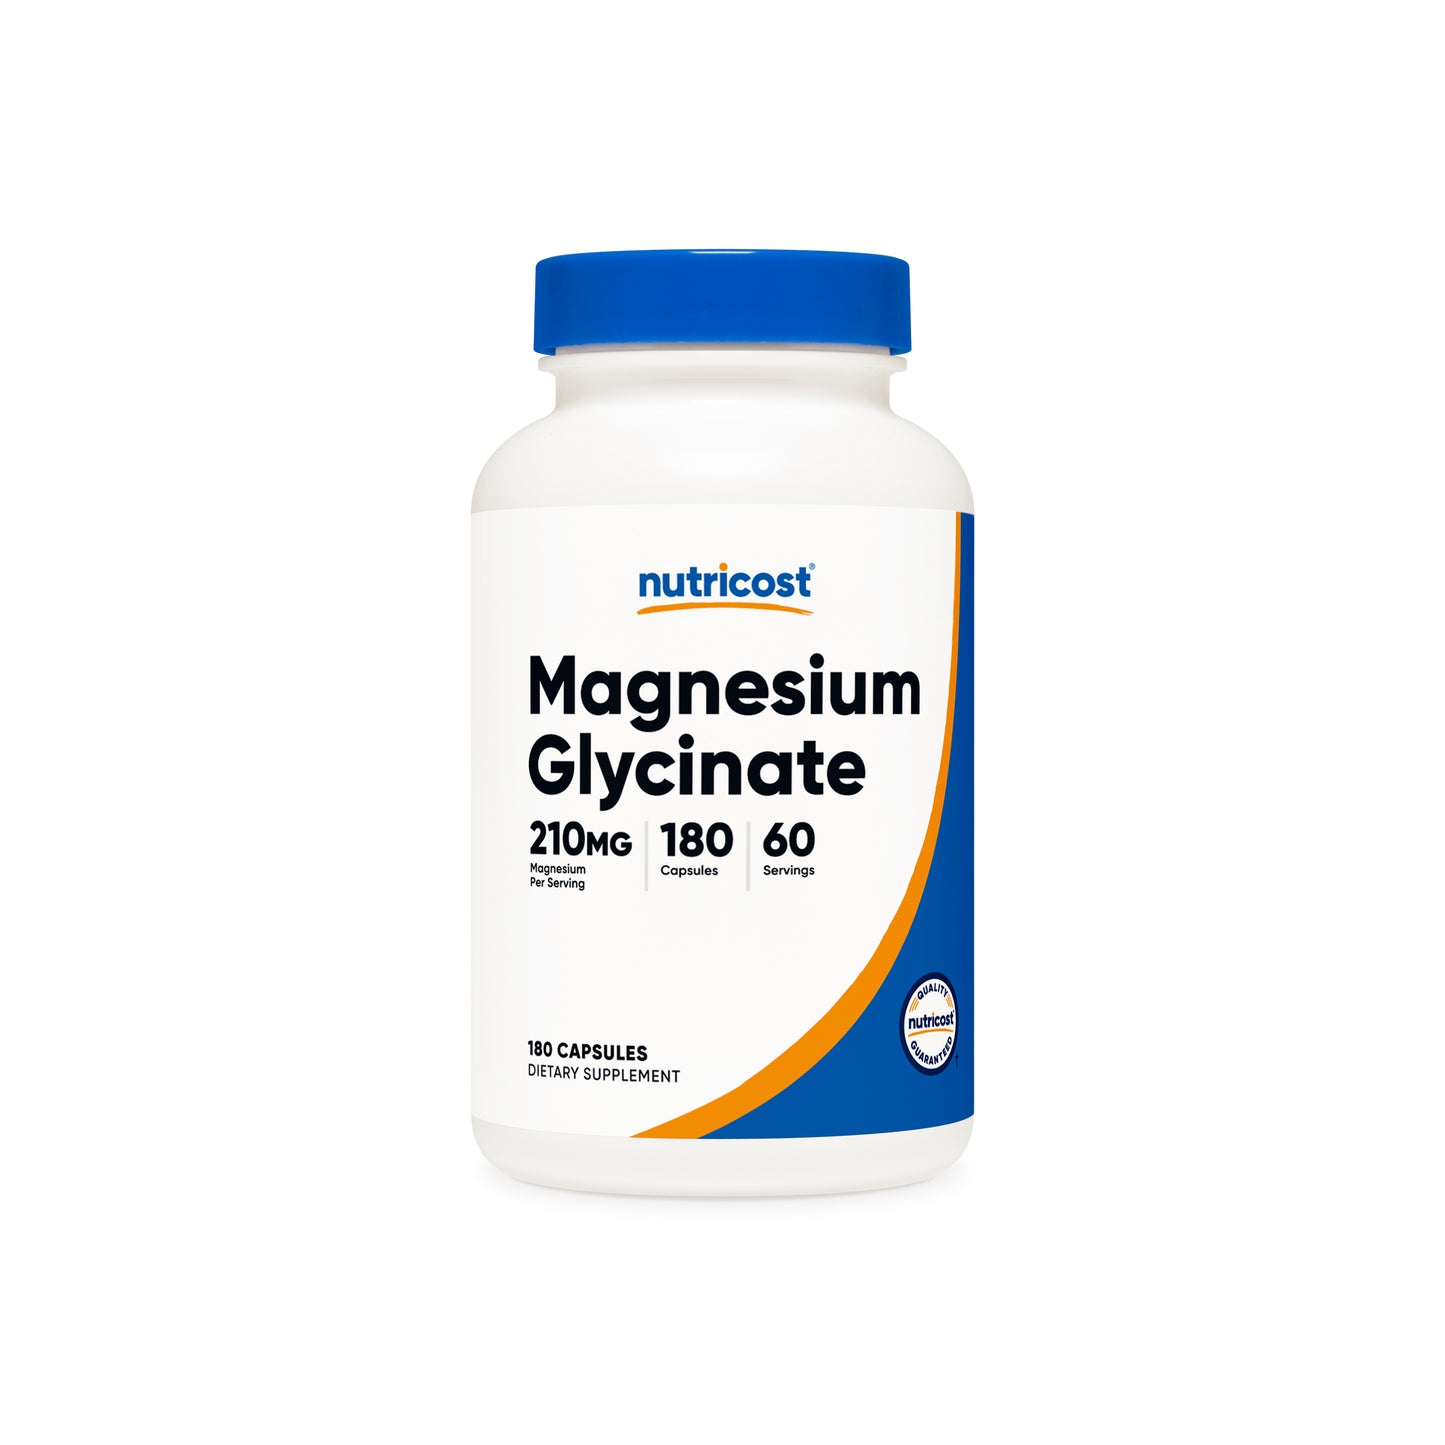 Nutricost Magnesium Glycinate